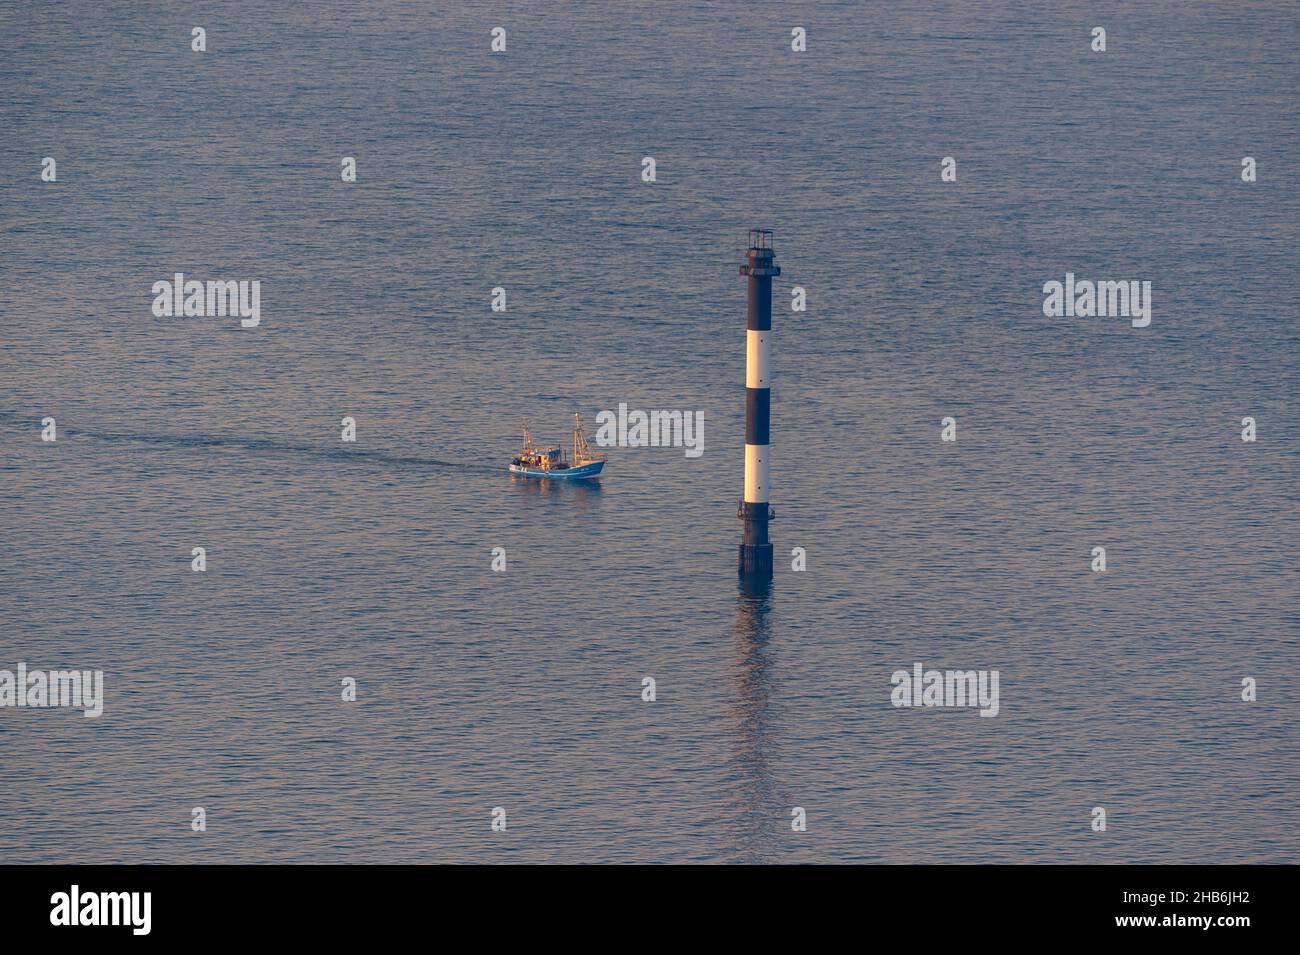 Cortador de pesca pasando por un marcador de fairway en el Mar del Norte en la zona del estuario del Elba, foto aérea, Alemania, Baja Sajonia, Cuxhaven Foto de stock